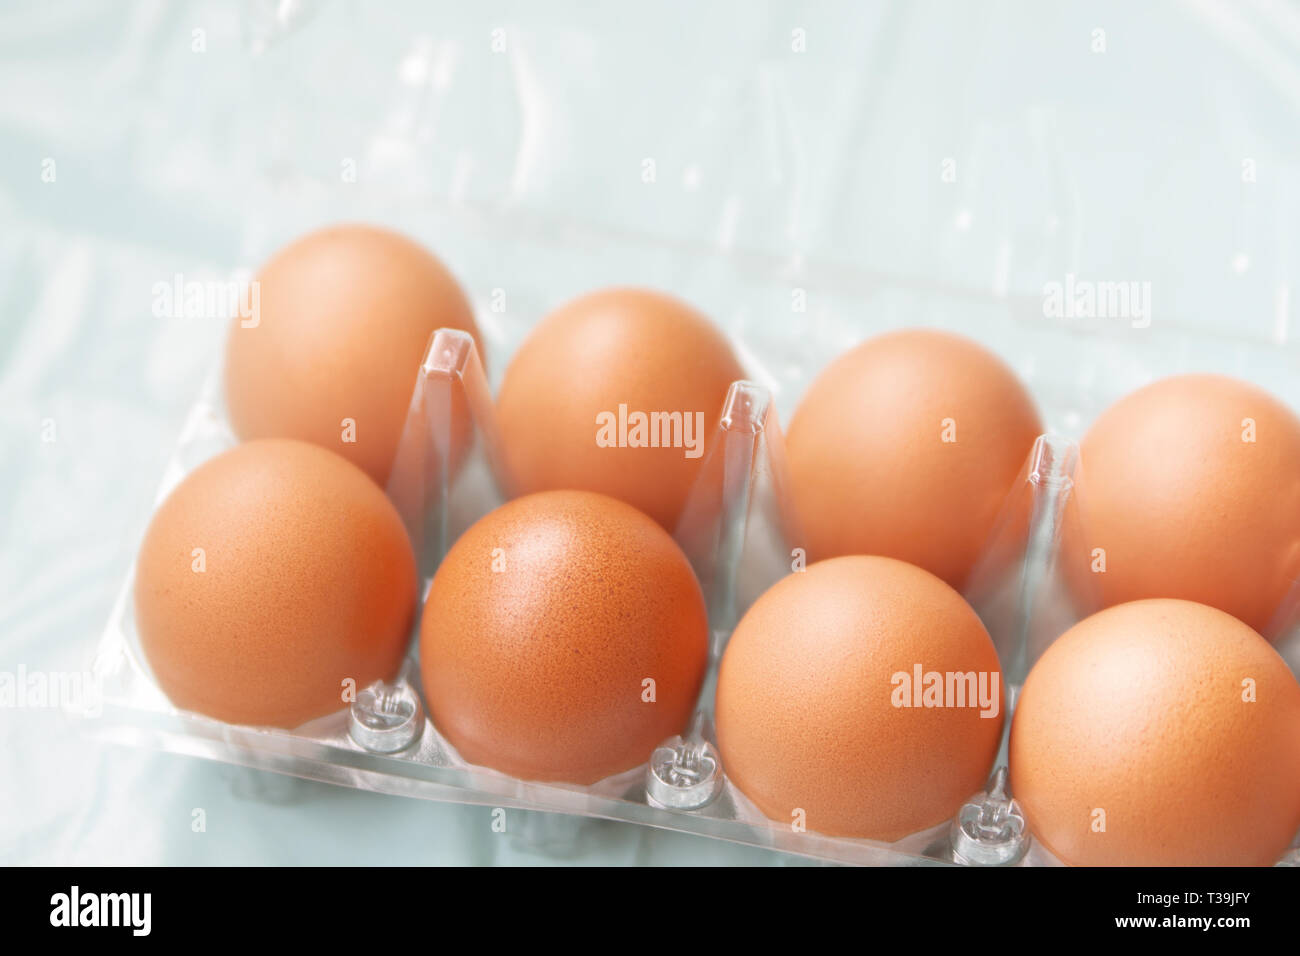 Los huevos de gallinas marrón fresco en el paquete de plástico transparente Foto de stock